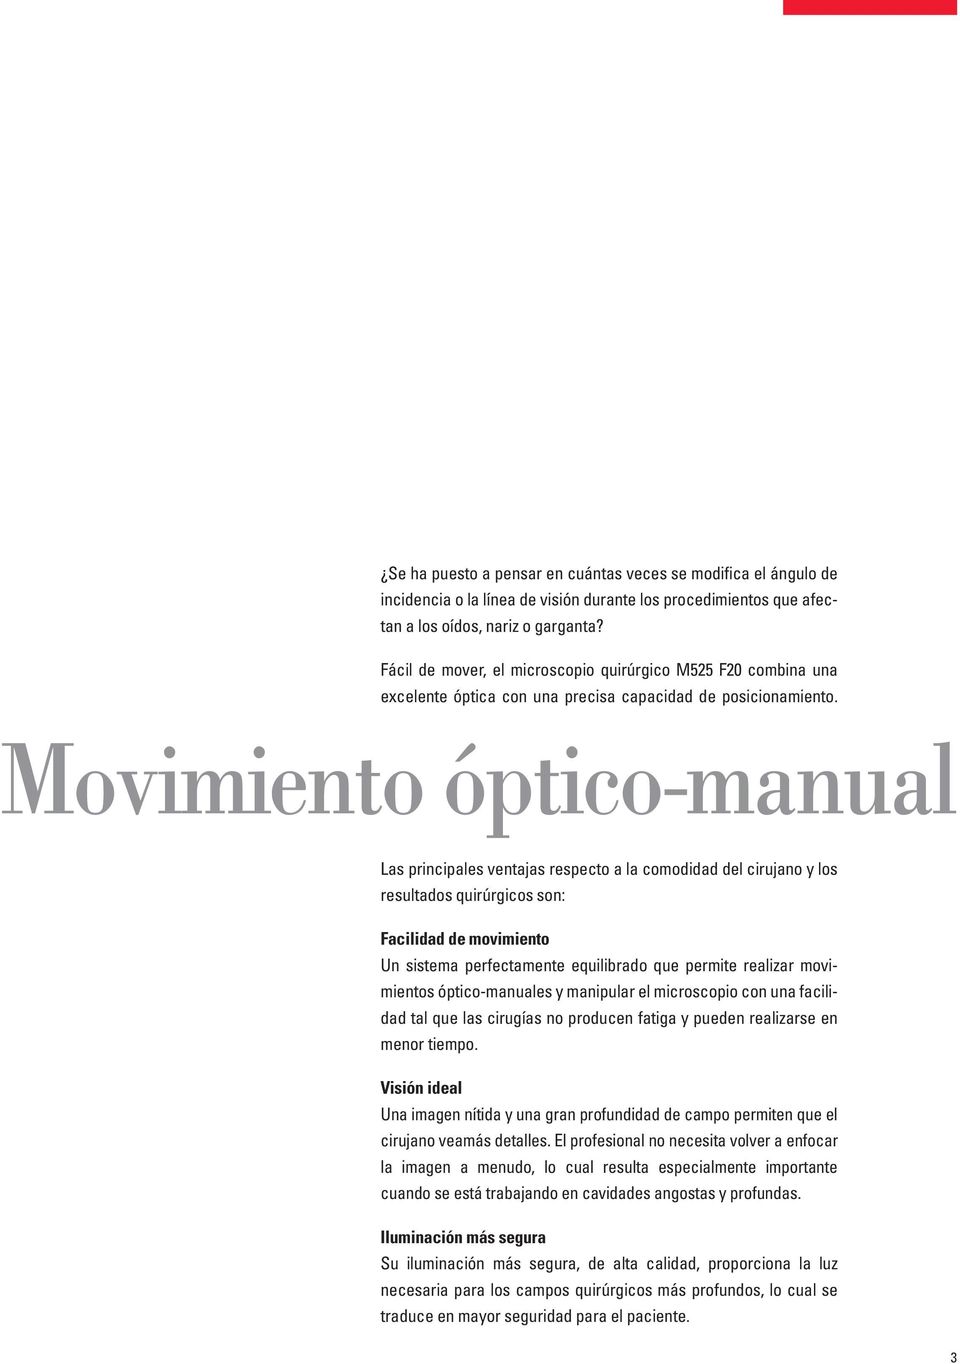 Movimiento óptico-manual Las principales ventajas respecto a la comodidad del cirujano y los resultados quirúrgicos son: Facilidad de movimiento Un sistema perfectamente equilibrado que permite